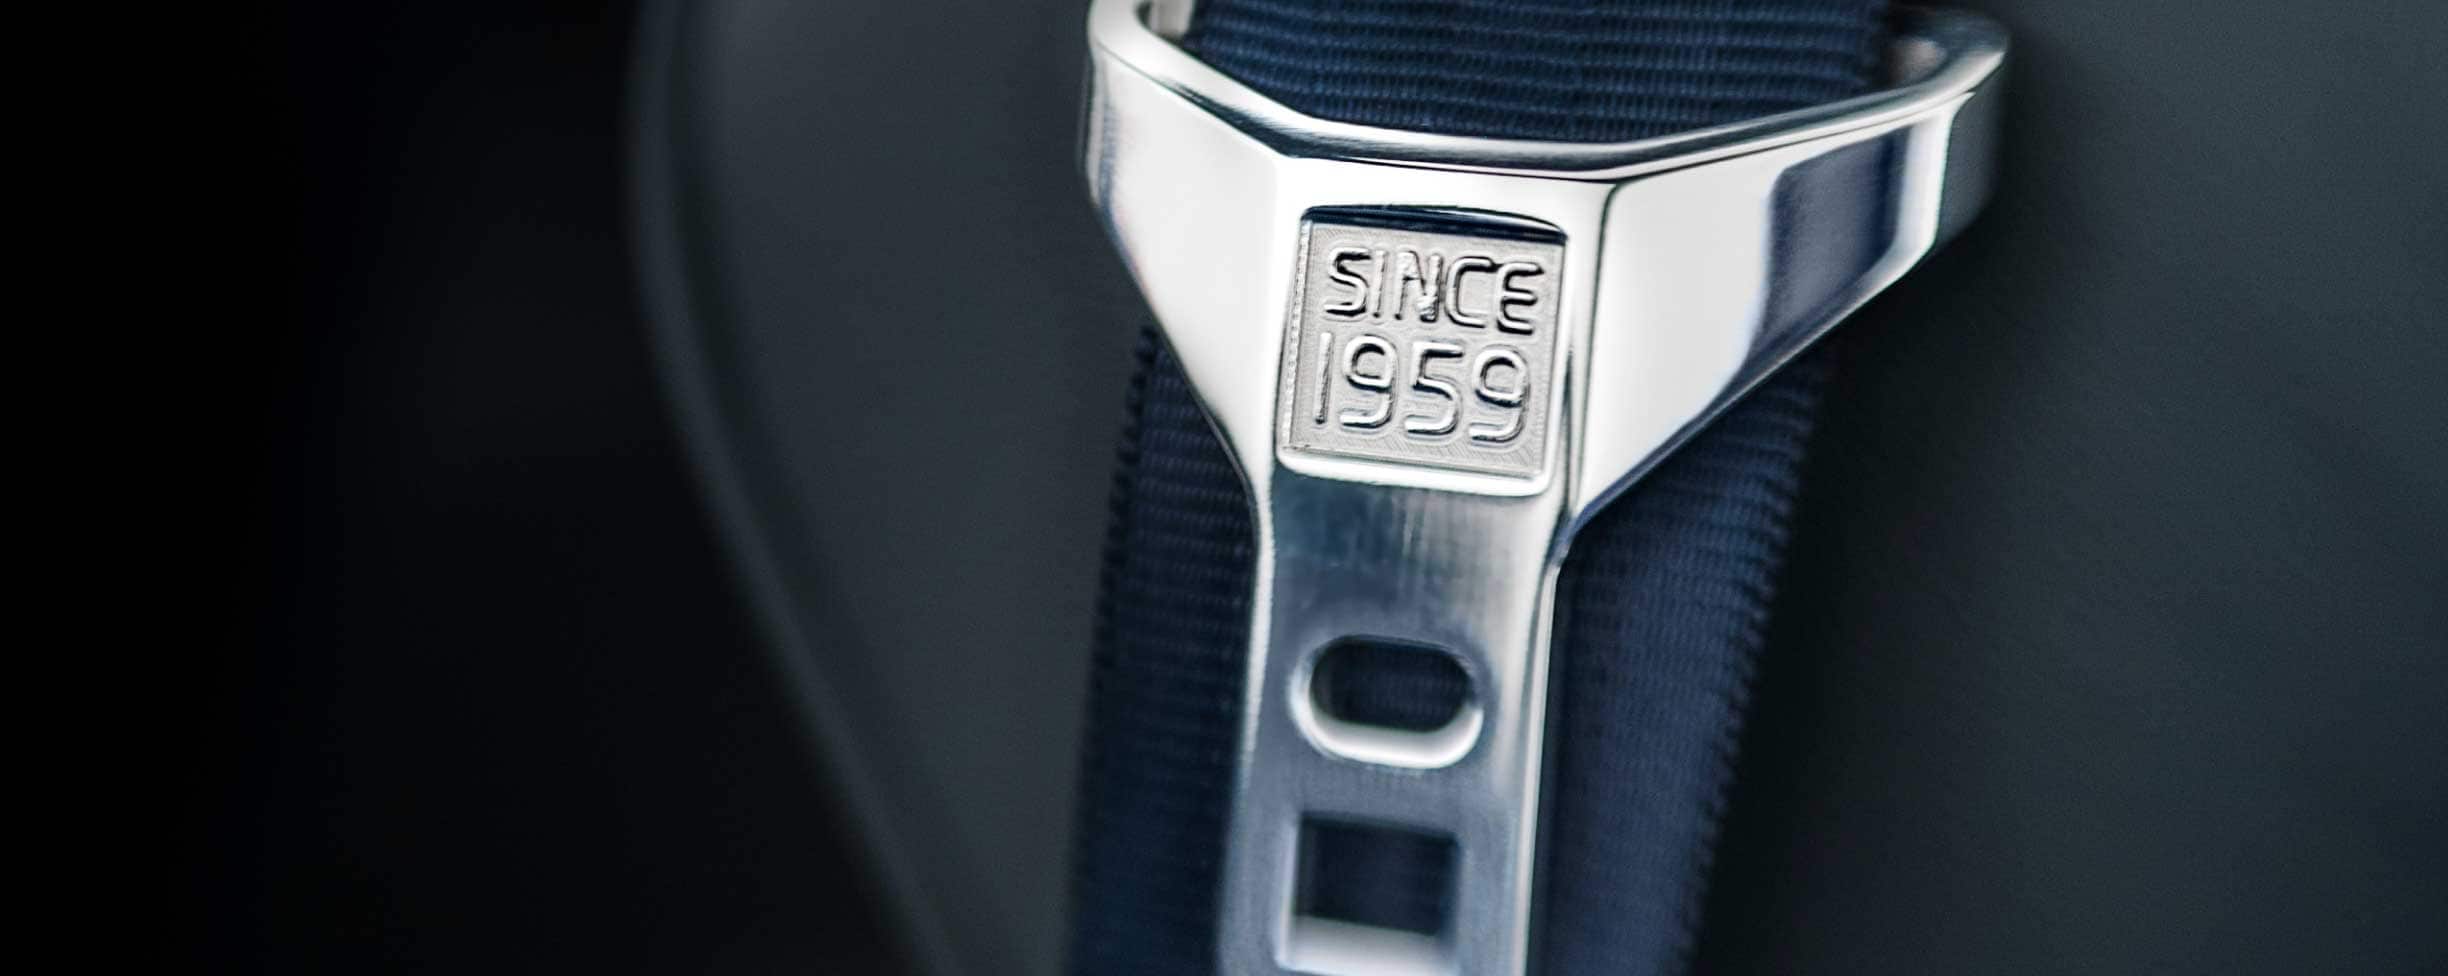 Um cinto de segurança em cinzento com o texto "Desde 1959" gravado na fivela.